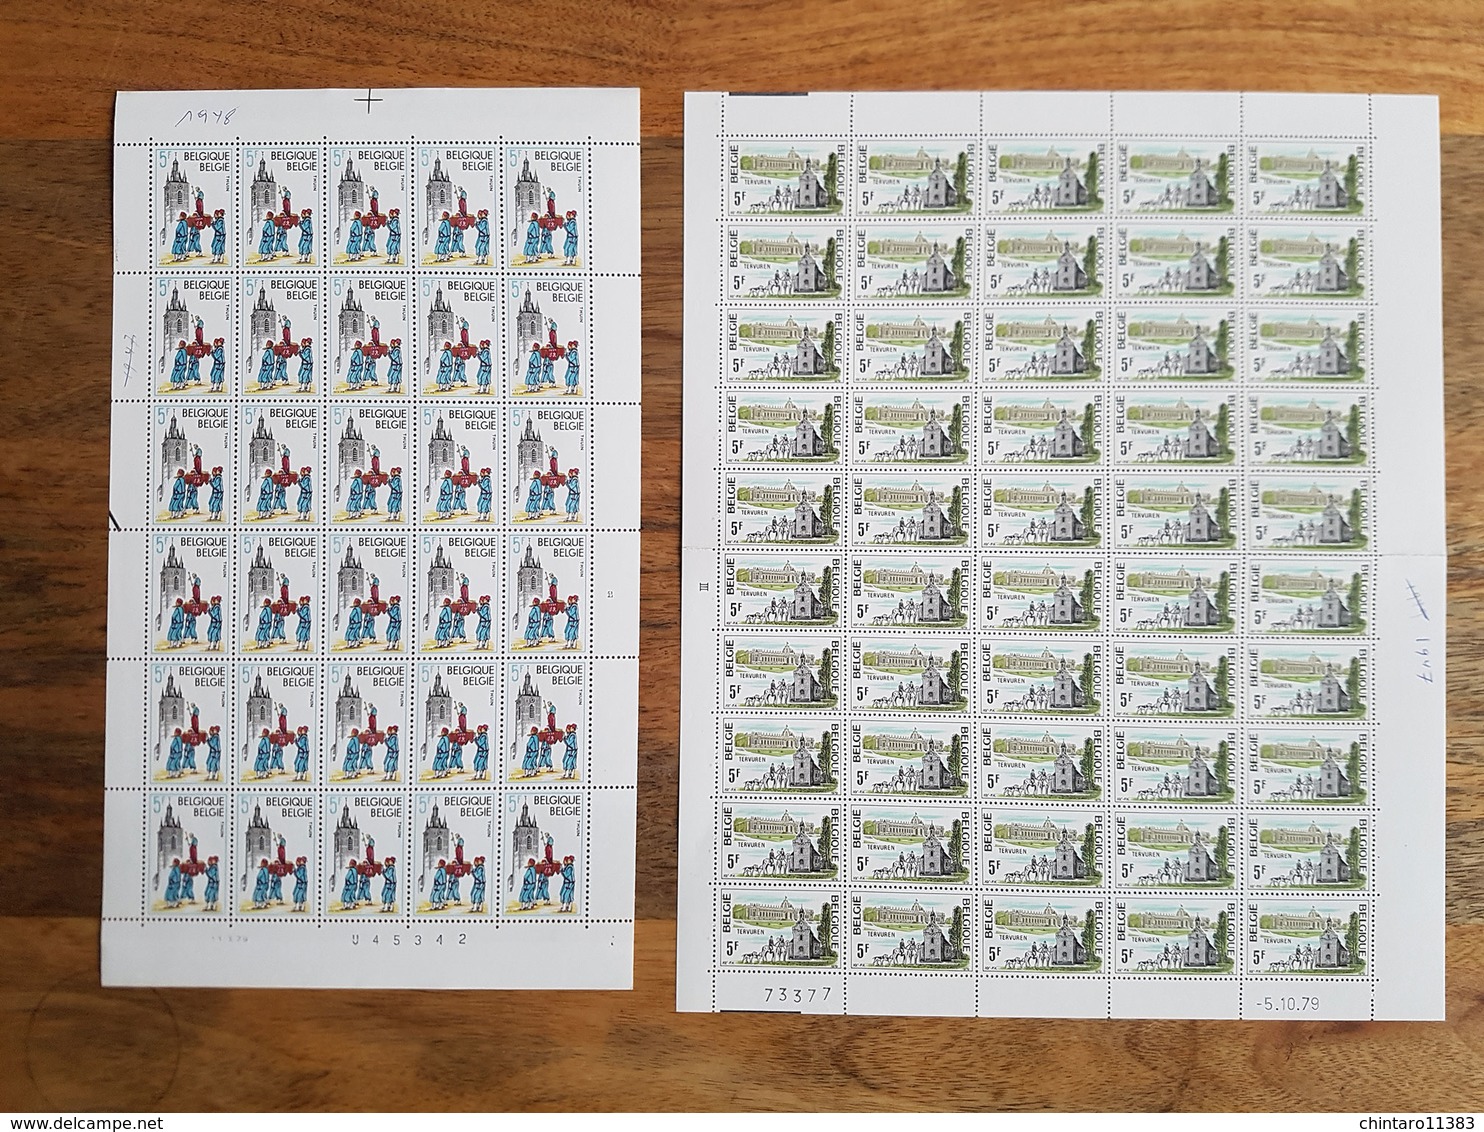 Lot feuilles complètes/incomplètes de timbres Belgique - Année 1979